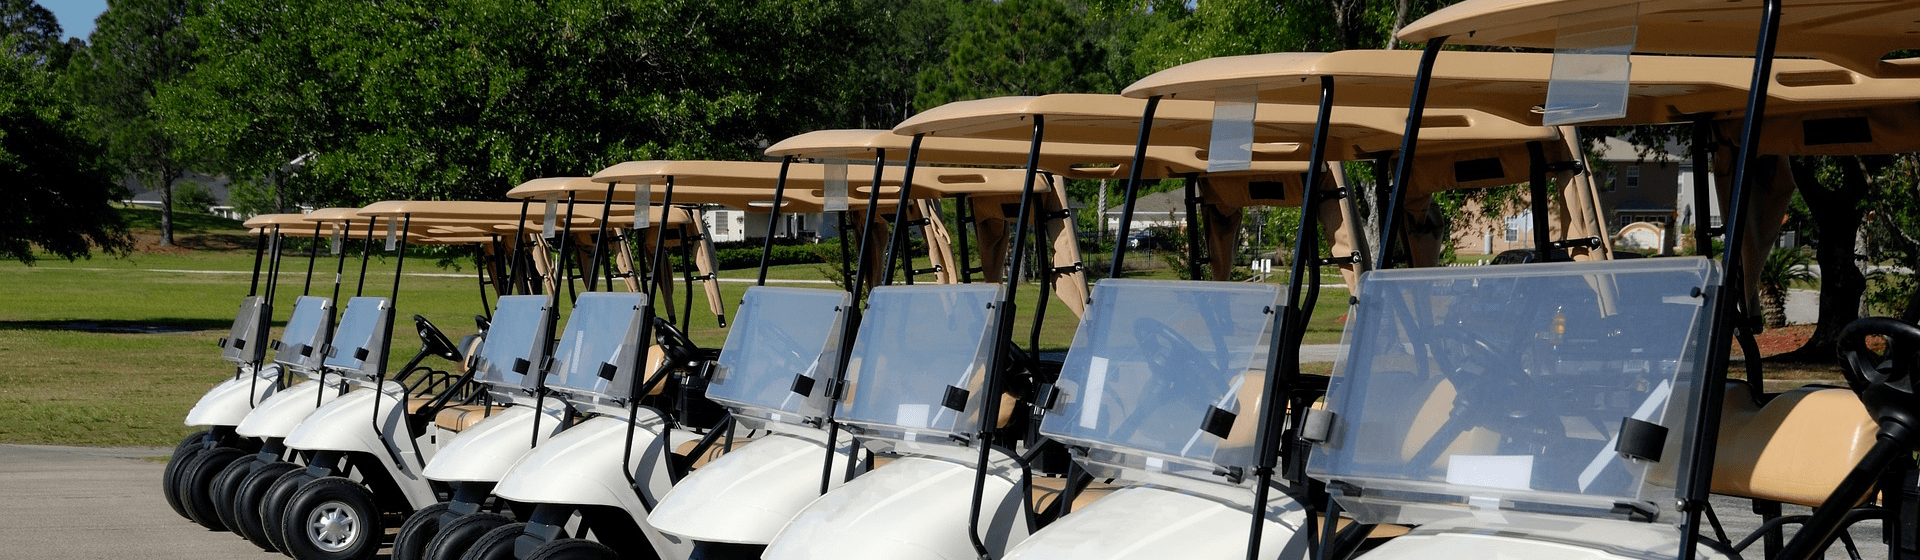 Grayhawk Golf Club